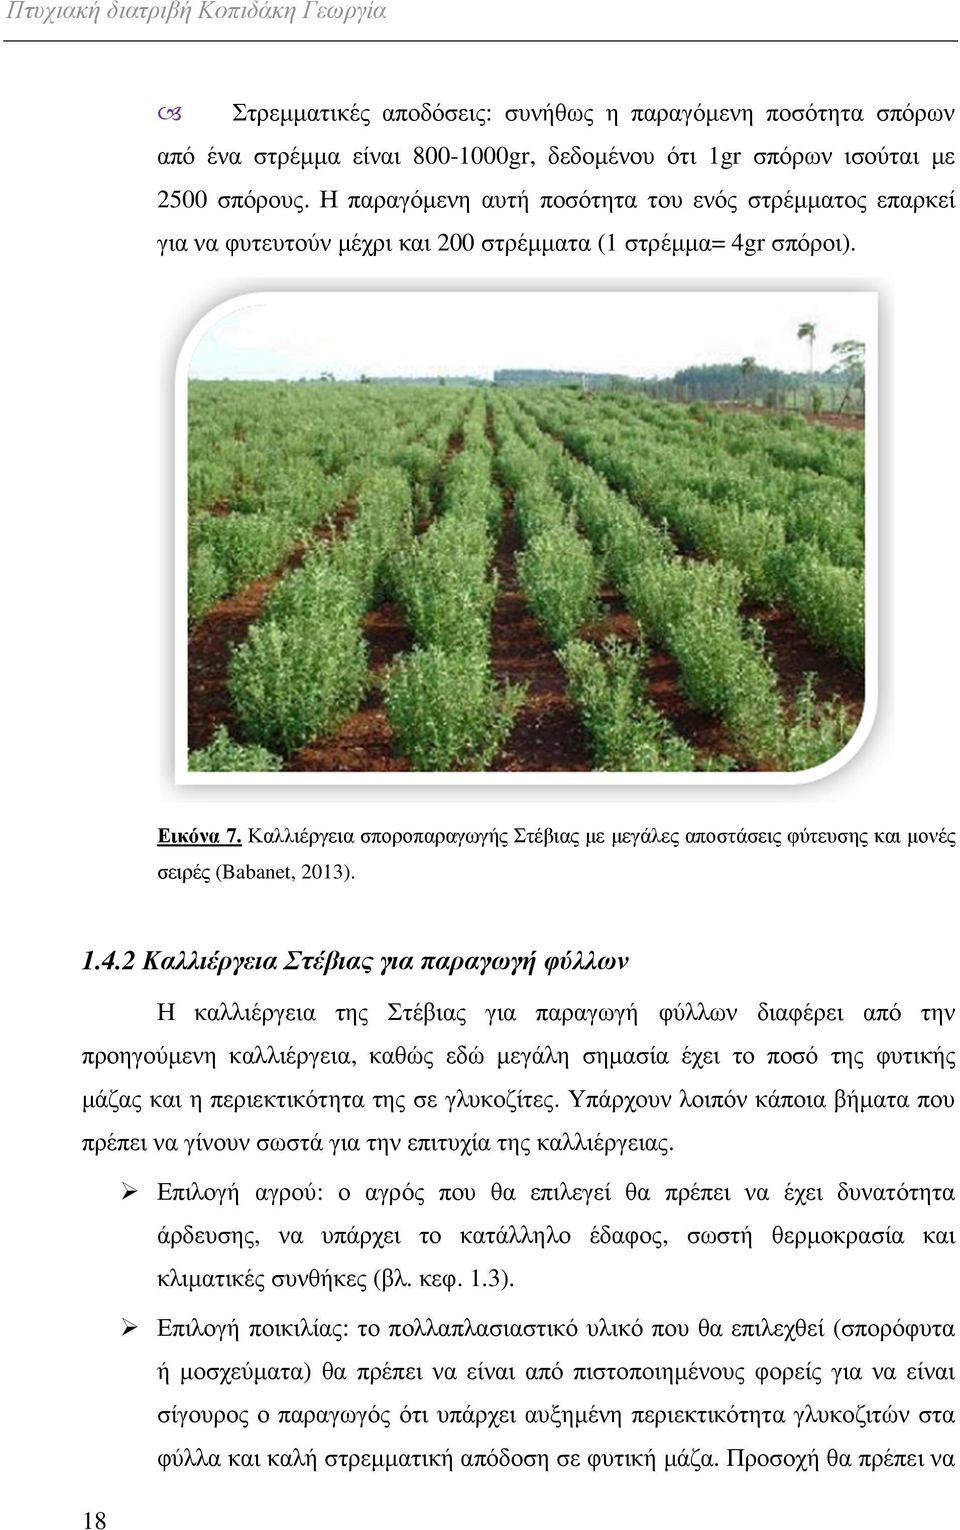 Καλλιέργεια σποροπαραγωγής Στέβιας µε µεγάλες αποστάσεις φύτευσης και µονές σειρές (Babanet, 2013). 1.4.